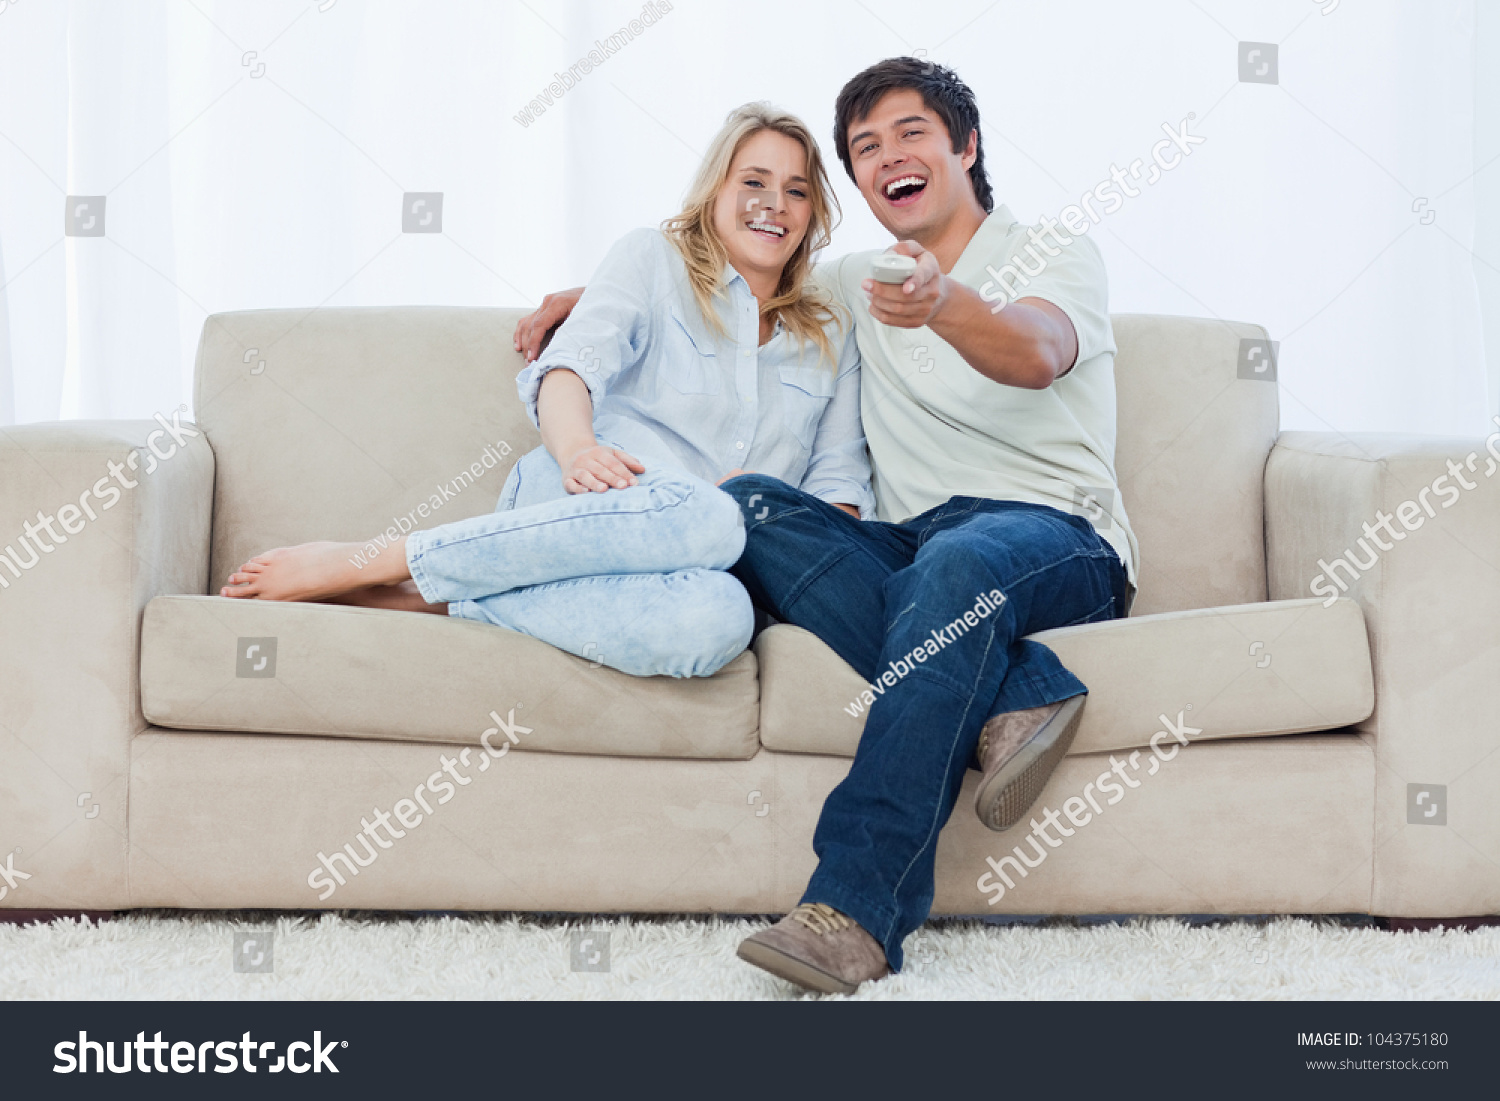 Мужчина и женщина на диване